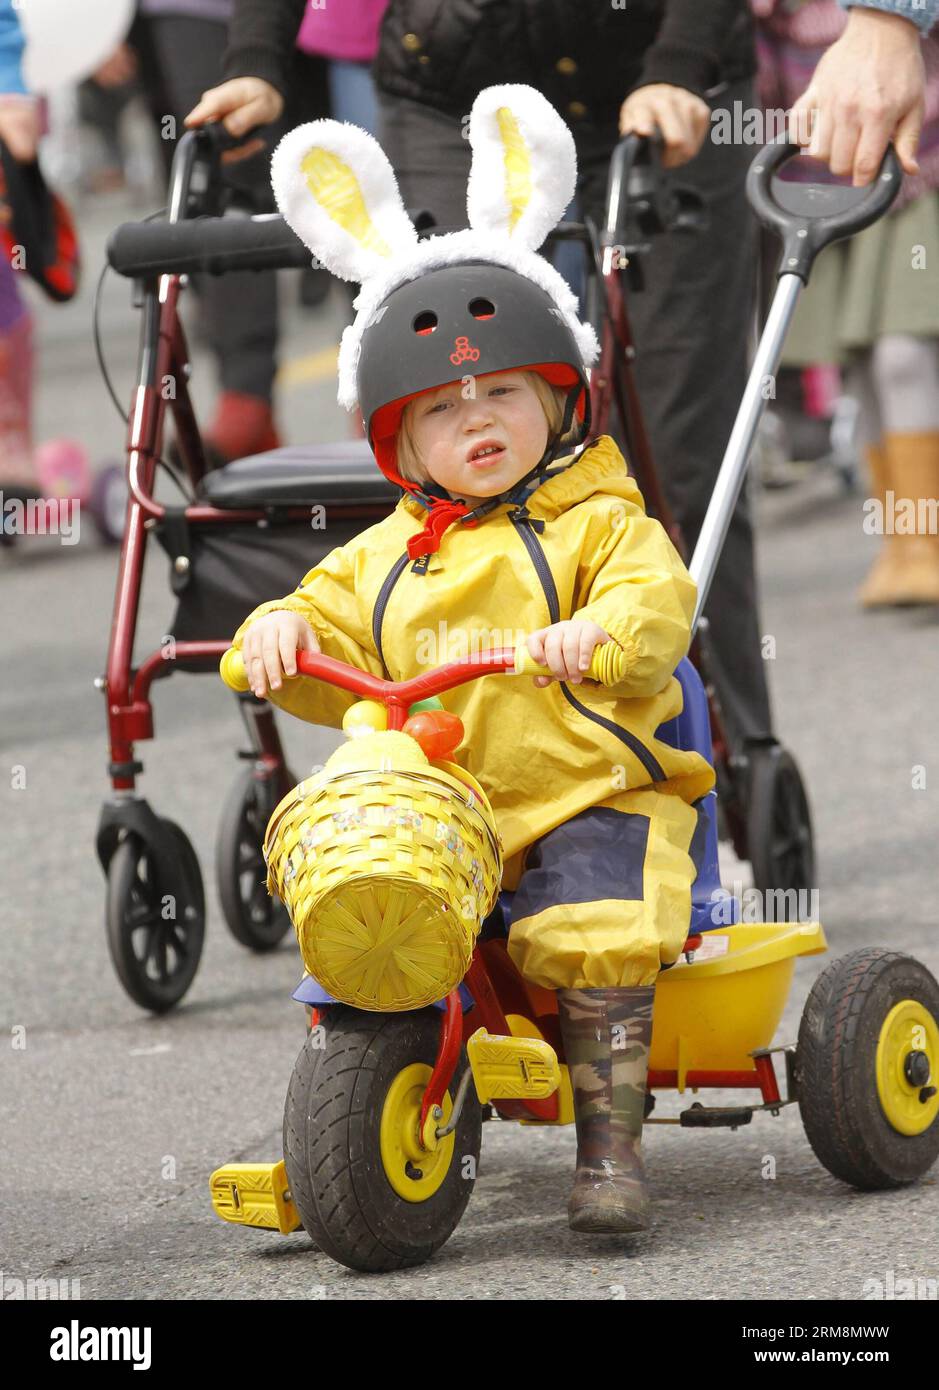 VANCOUVER, 20. April 2014 - Ein Kind nimmt an der Osterparade während der Osterveranstaltung in Delta, Kanada, am 20. April 2014 Teil. Die Menschen nehmen an der jährlichen Osterparade und der Eierjagd Teil, um Ostern im Delta zu feiern. (Xinhua/Liang Sen)(ctt) CANADA-VANCOUVER-EASTER PUBLICATIONxNOTxINxCHN Vancouver 20. April 2014 ein Kind nimmt an der Osterparade während des Osterereignisses in Delta Canada Teil 20. April 2014 Prominente nehmen an der jährlichen Osterparade und der Eierjagd Teil, um das Ostern in Delta XINHUA zu feiern Liang Sen CTT Canada Vancouver Easter PUBLICATINxTCHN Stockfoto